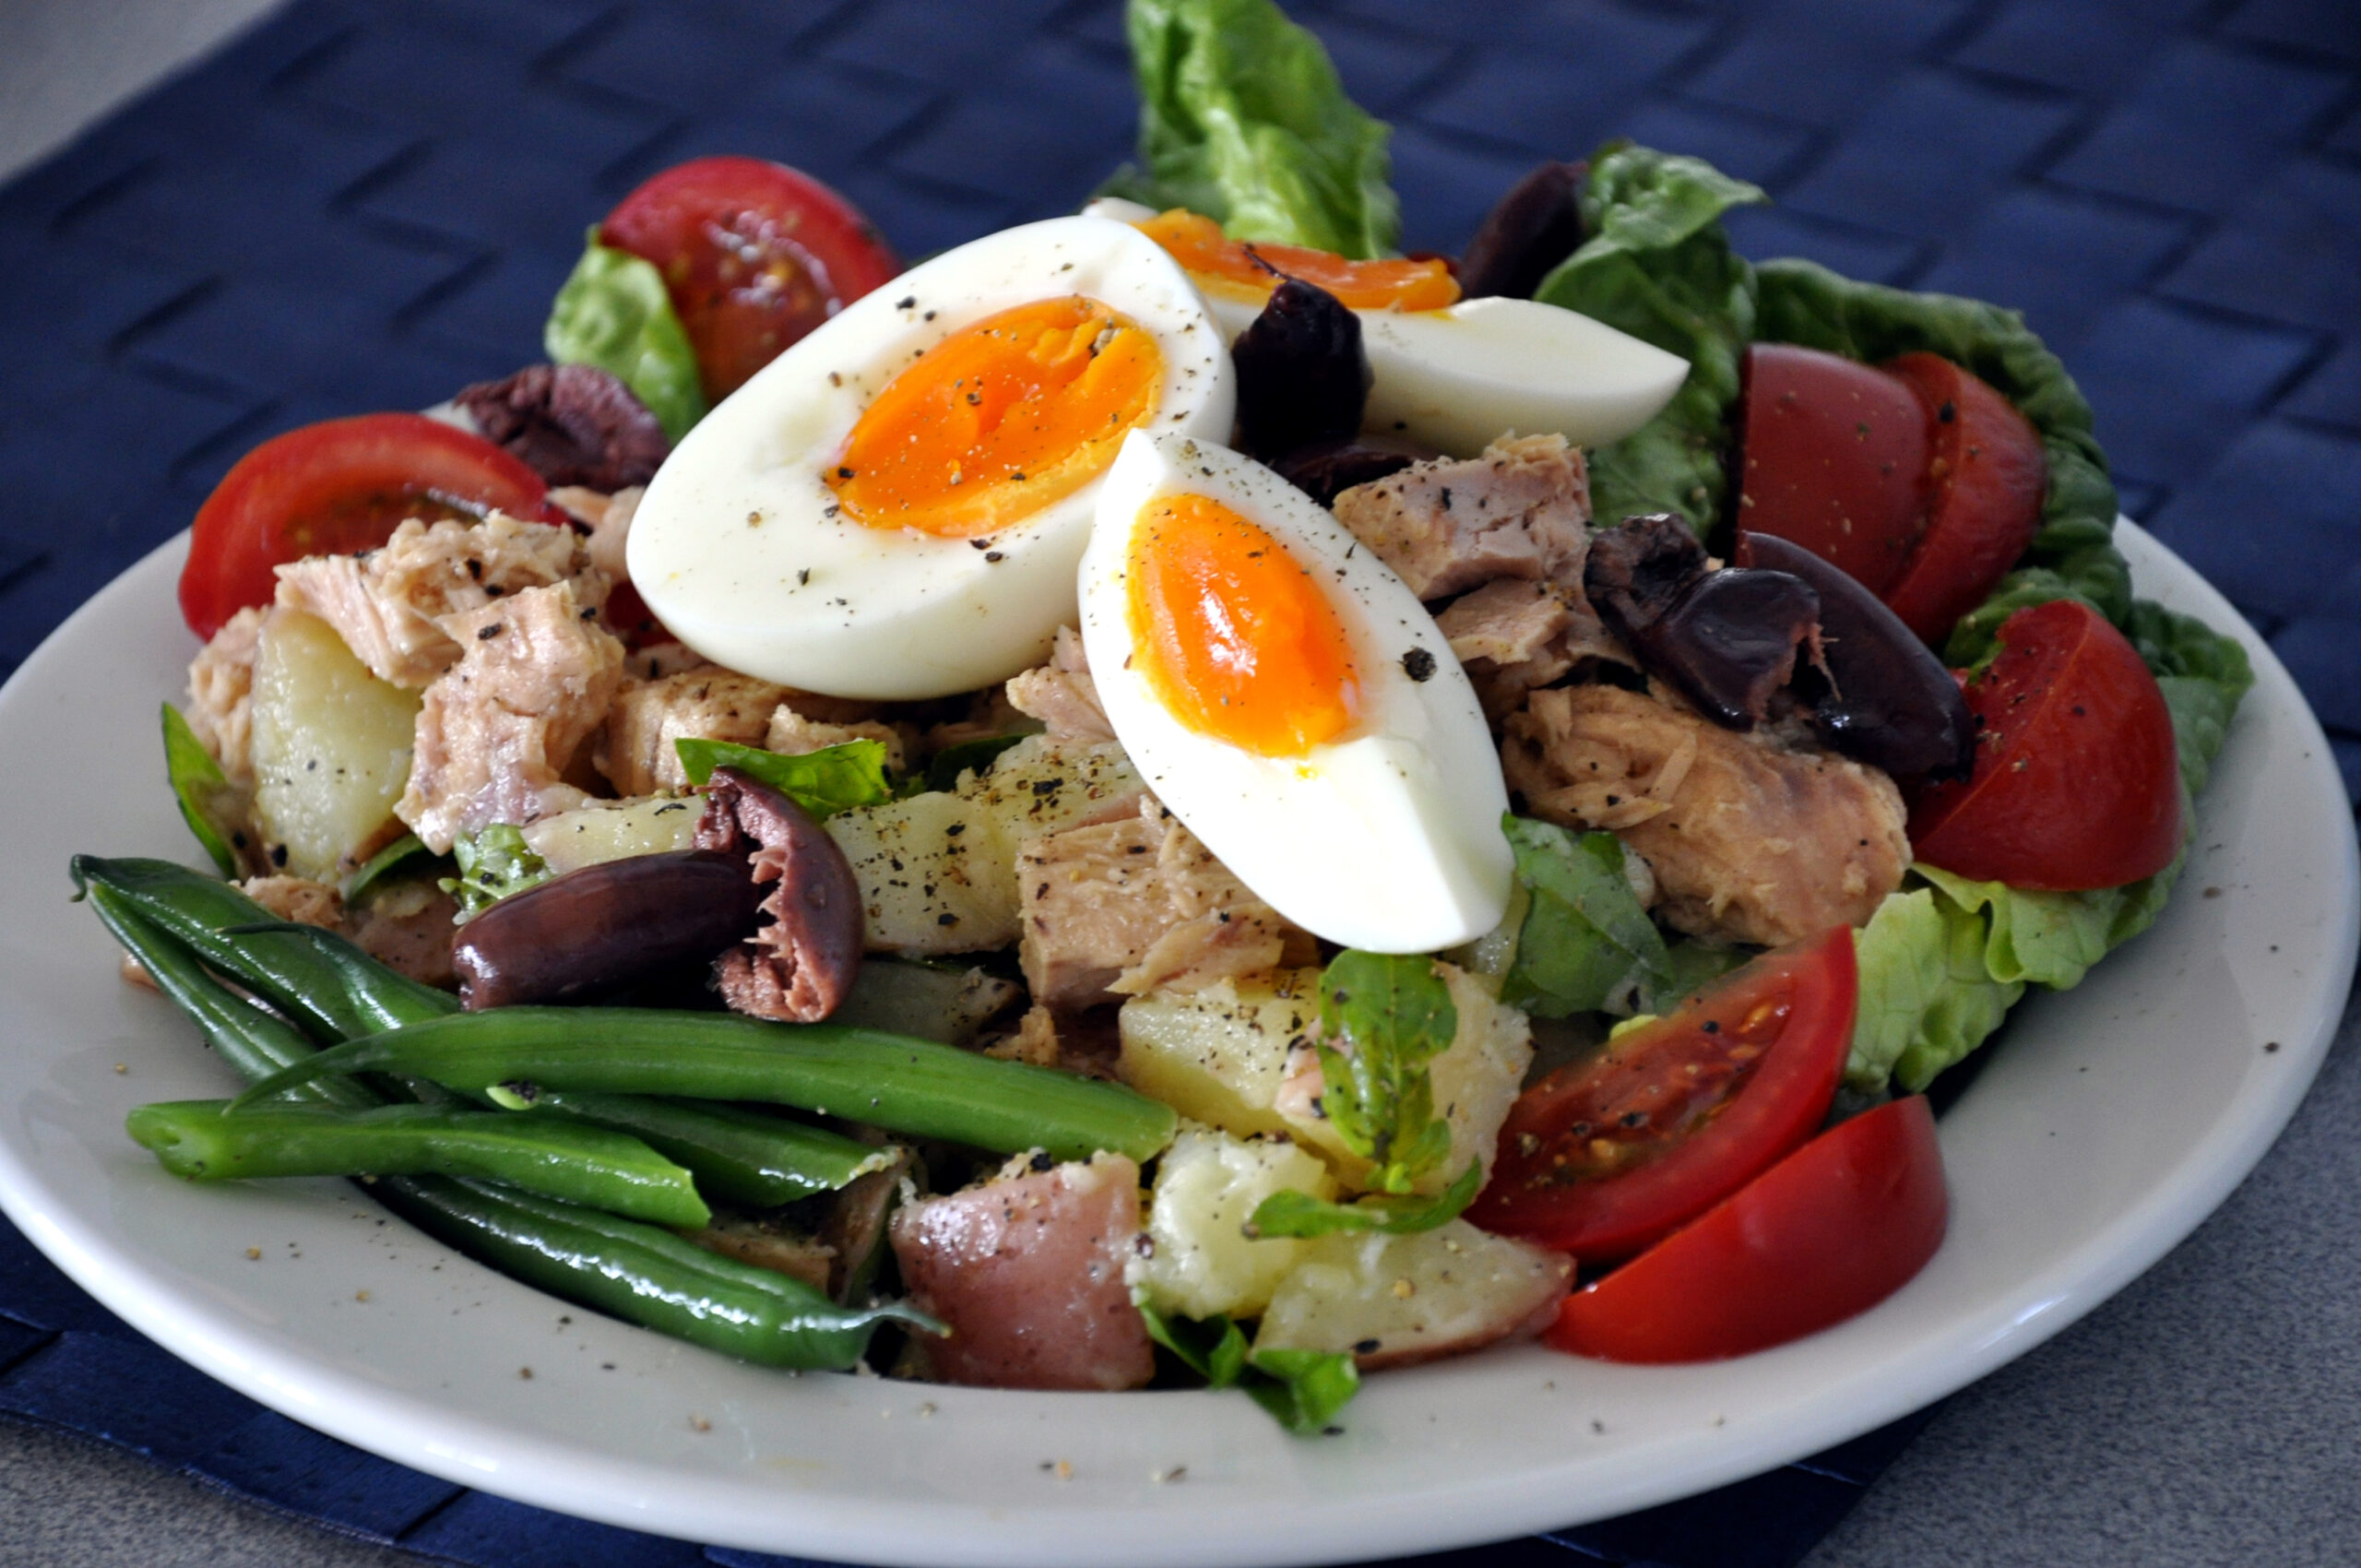 L’insalata nizzarda è la soluzione ideale per risolvere un pranzo o una cena quando le temperature iniziano a salire.